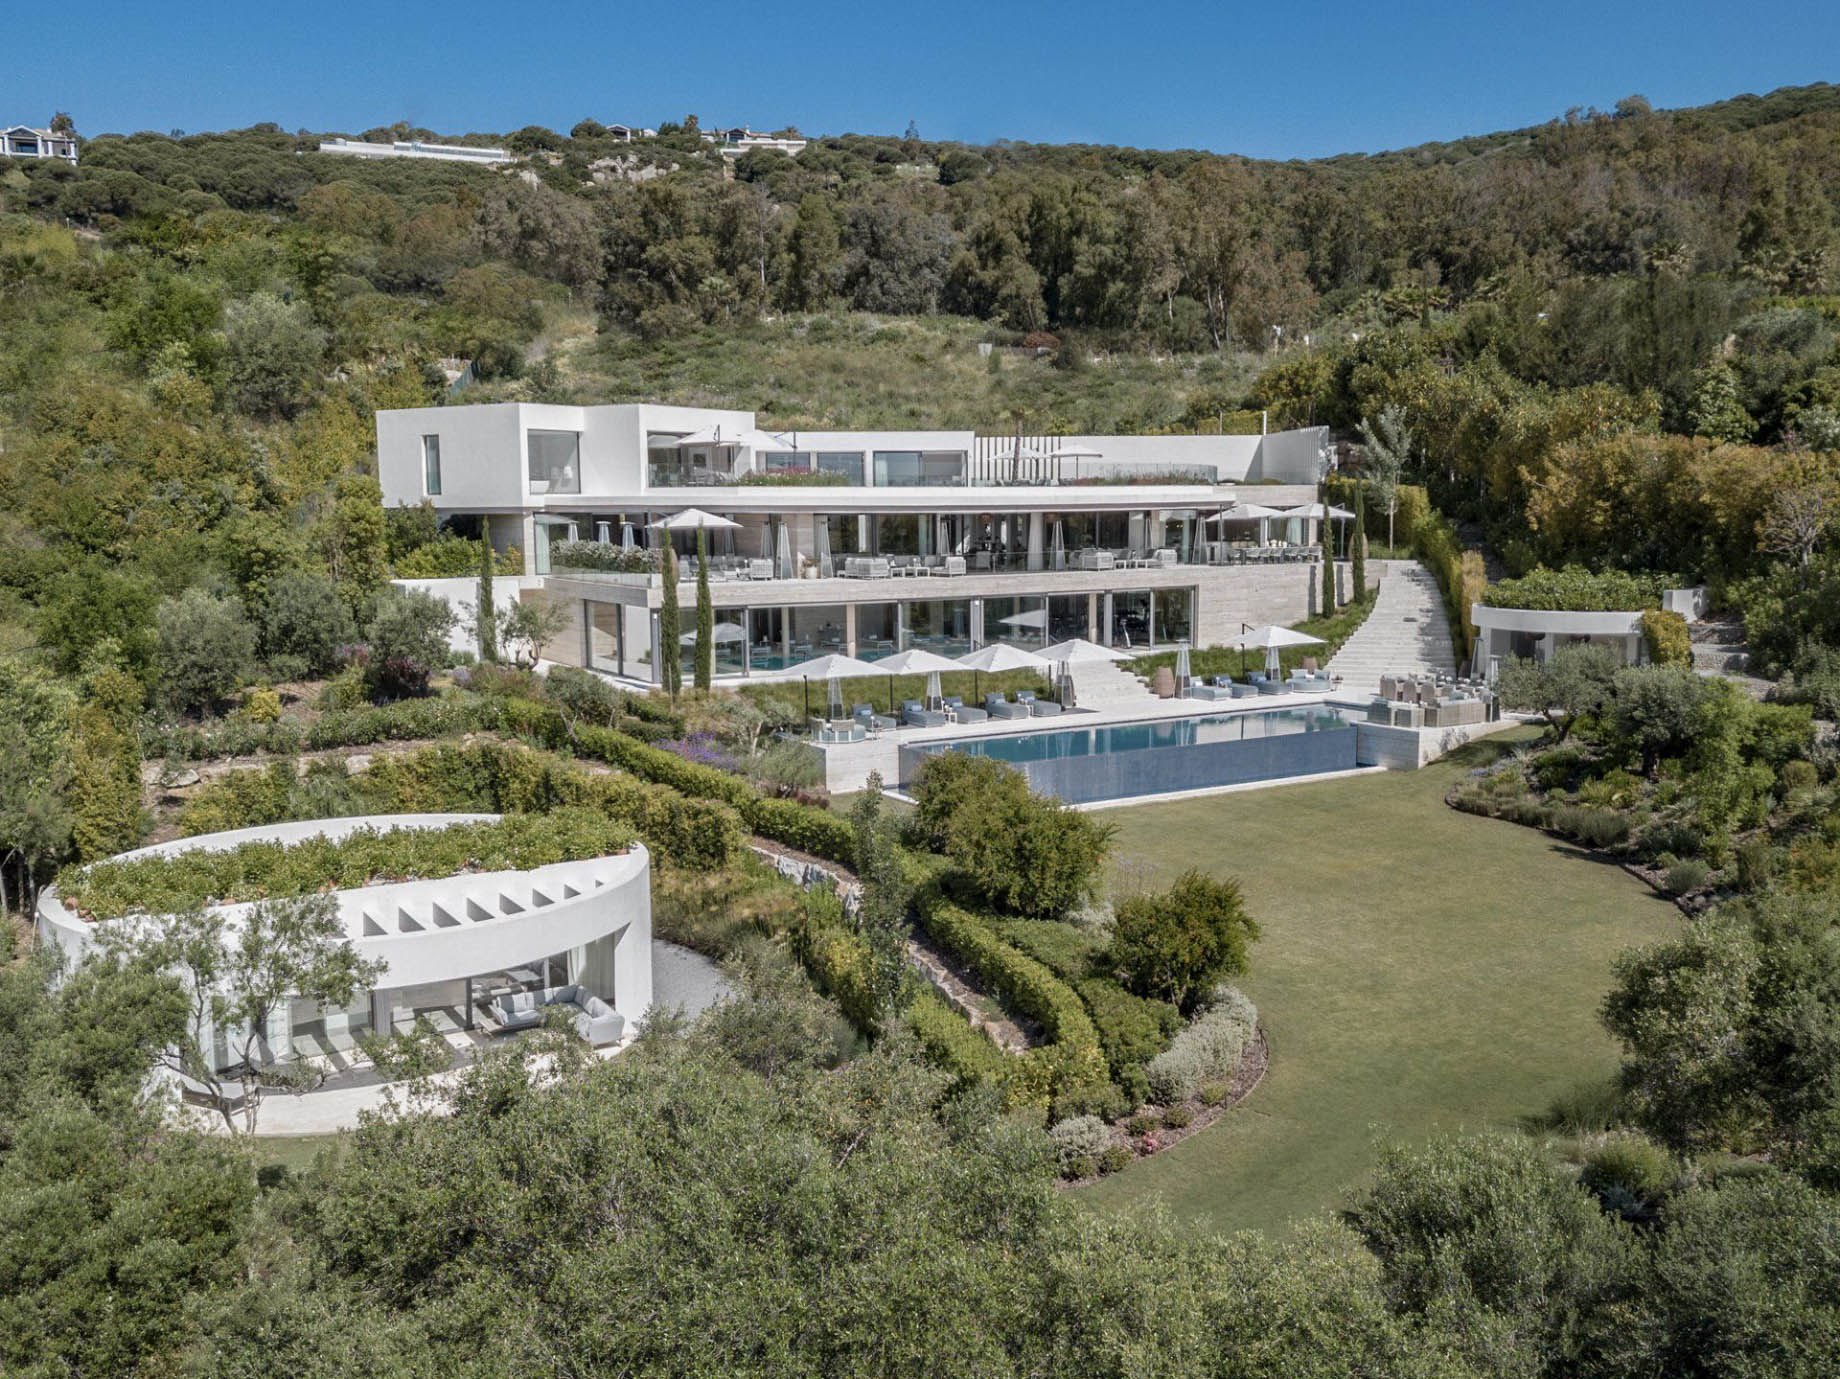 Villa VELA Modern Contemporary Residence – El Mirador, La Reserva Sotogrande, Spain – 1